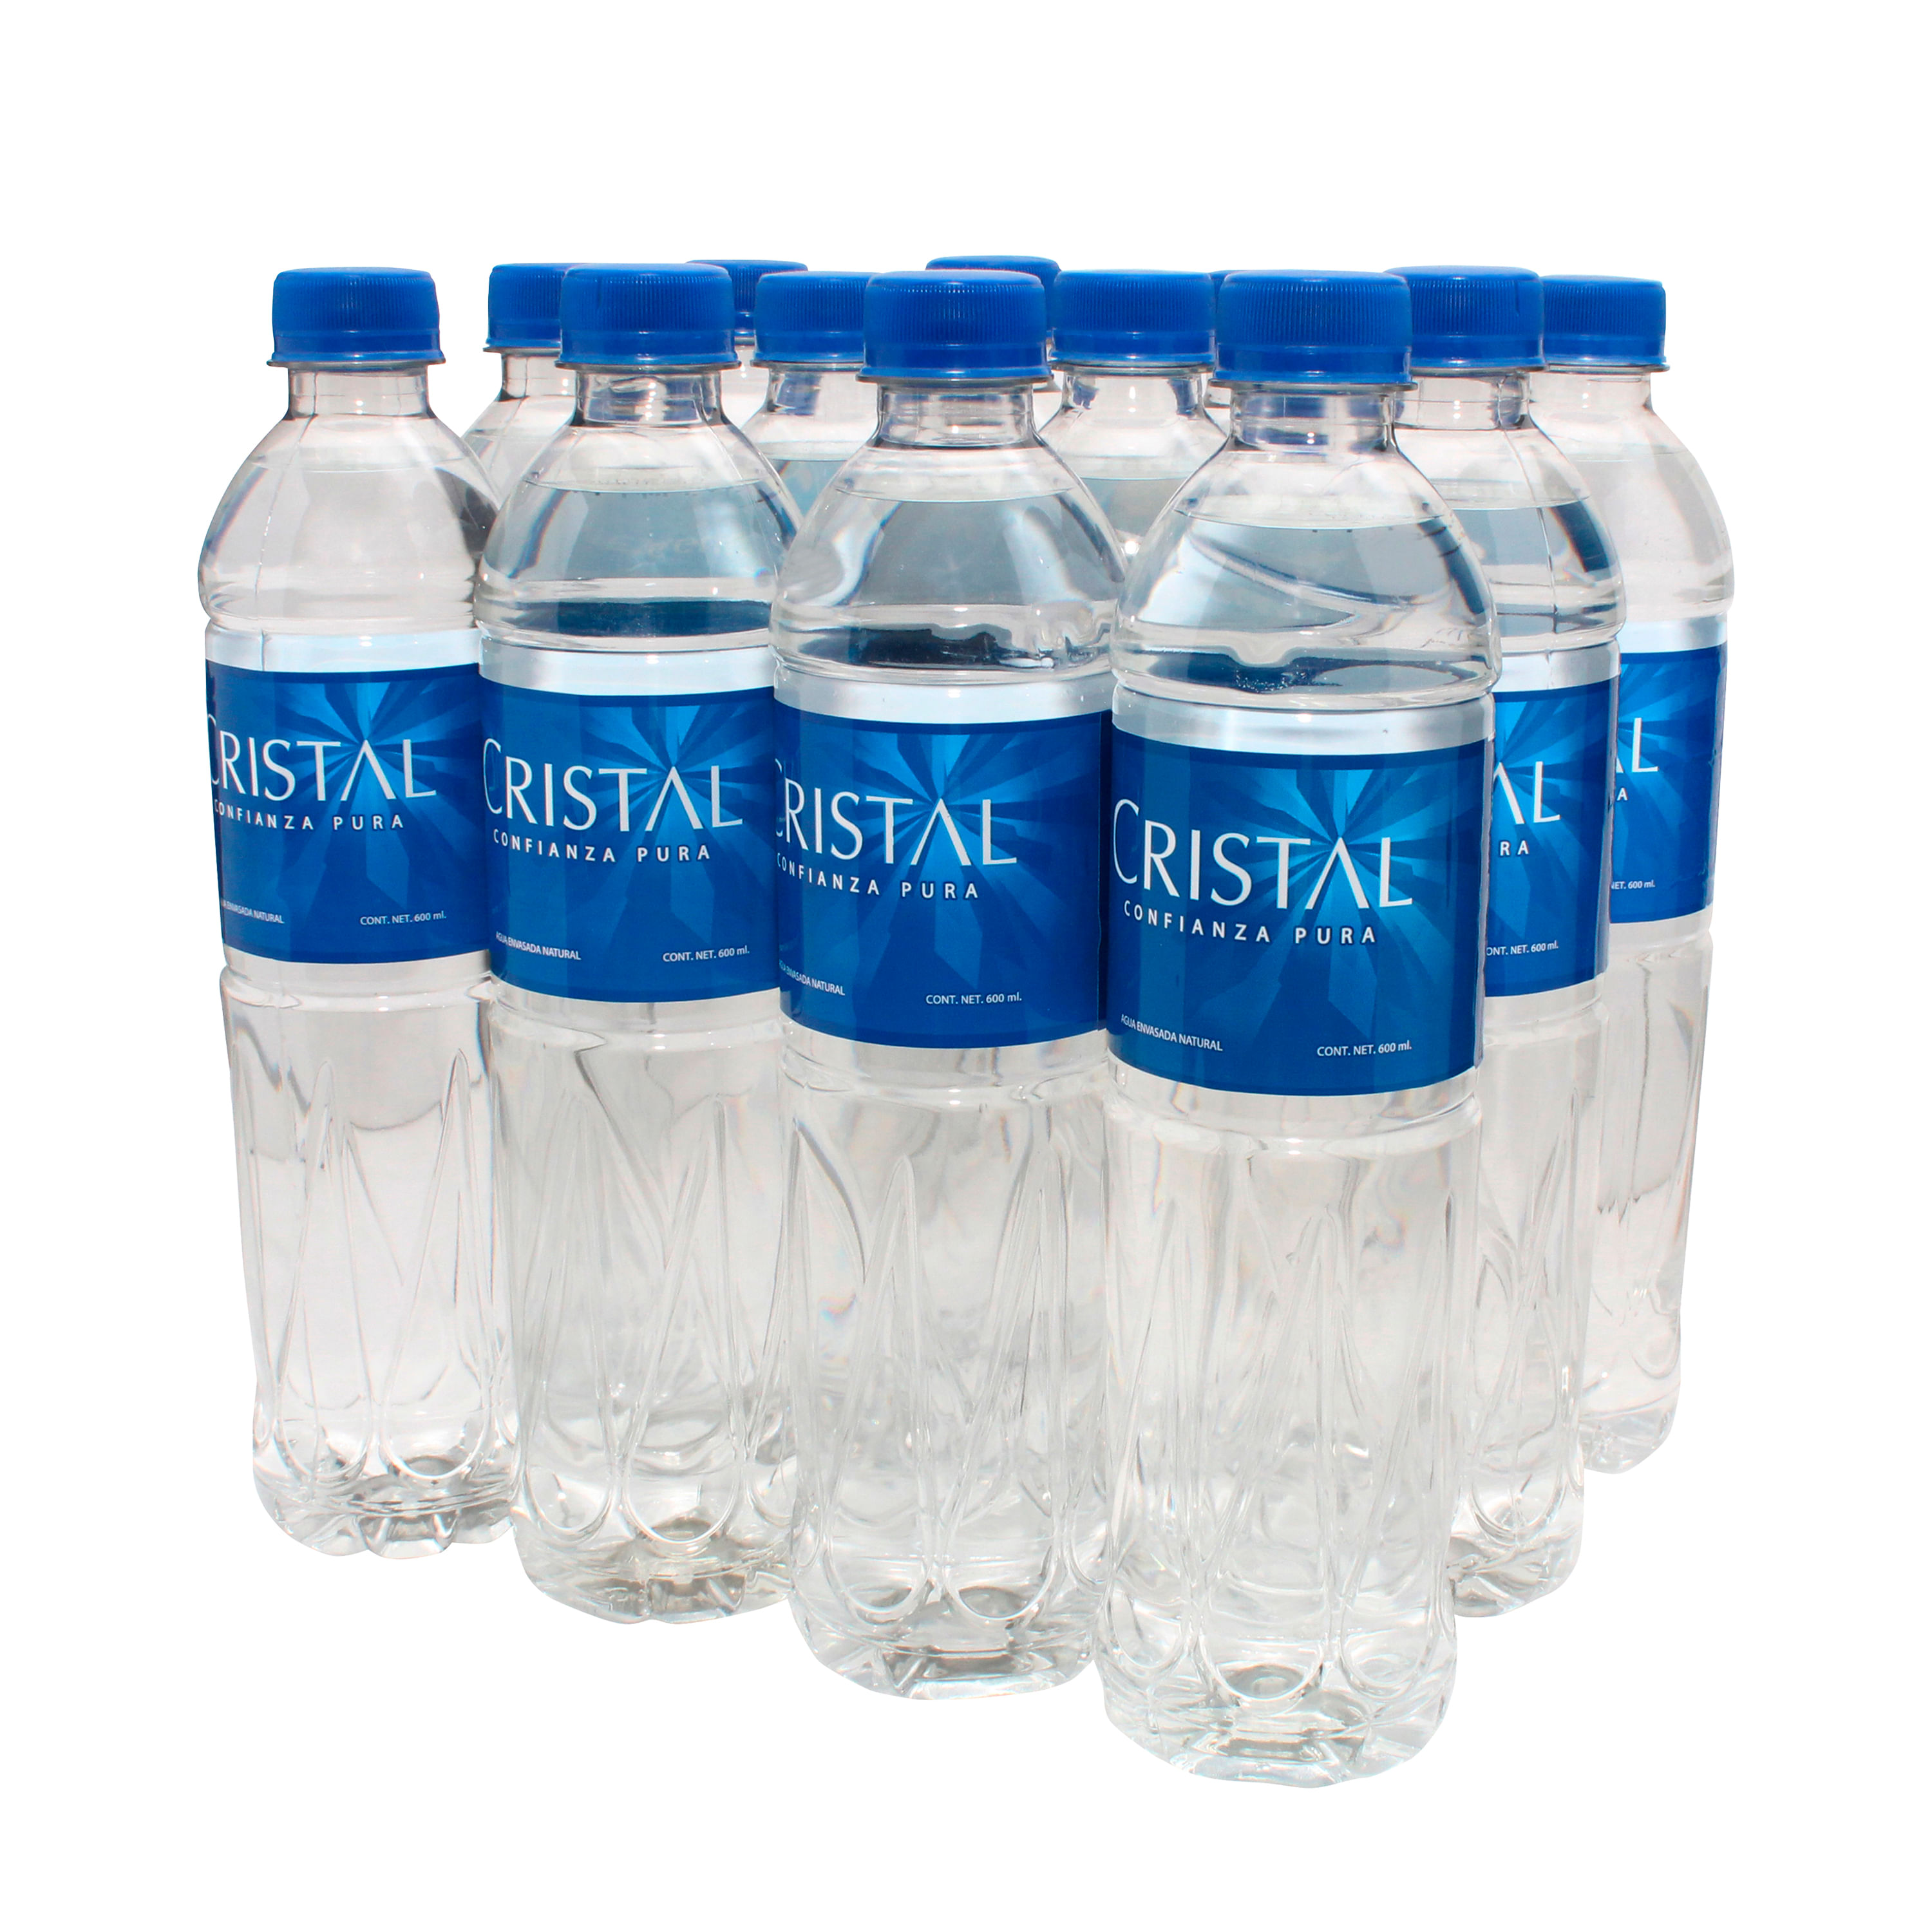 Agua Cristal 1 500 ml - Los Precios